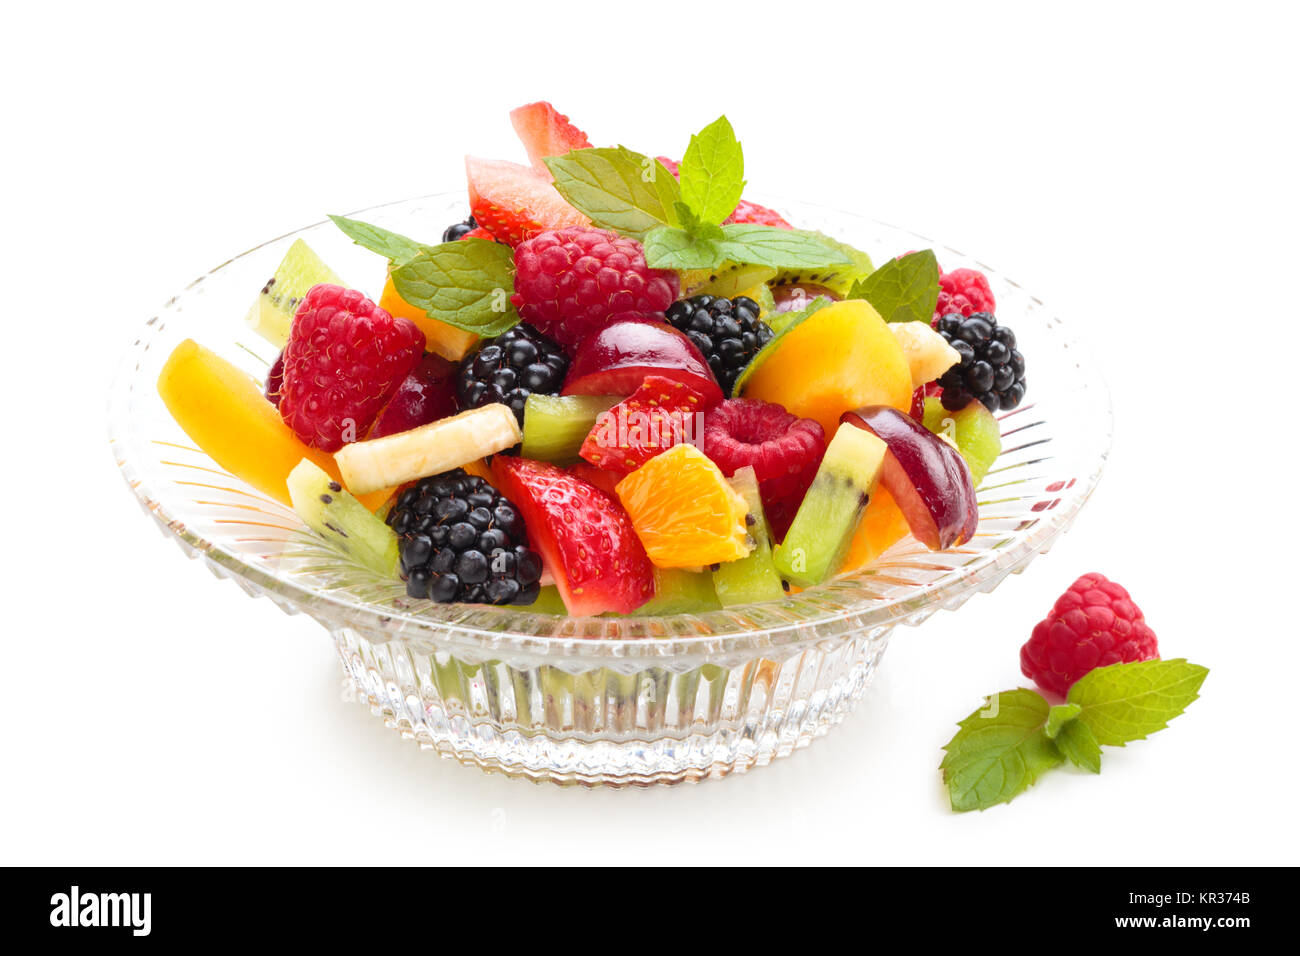 Fresh fruit salad. Stock Photo